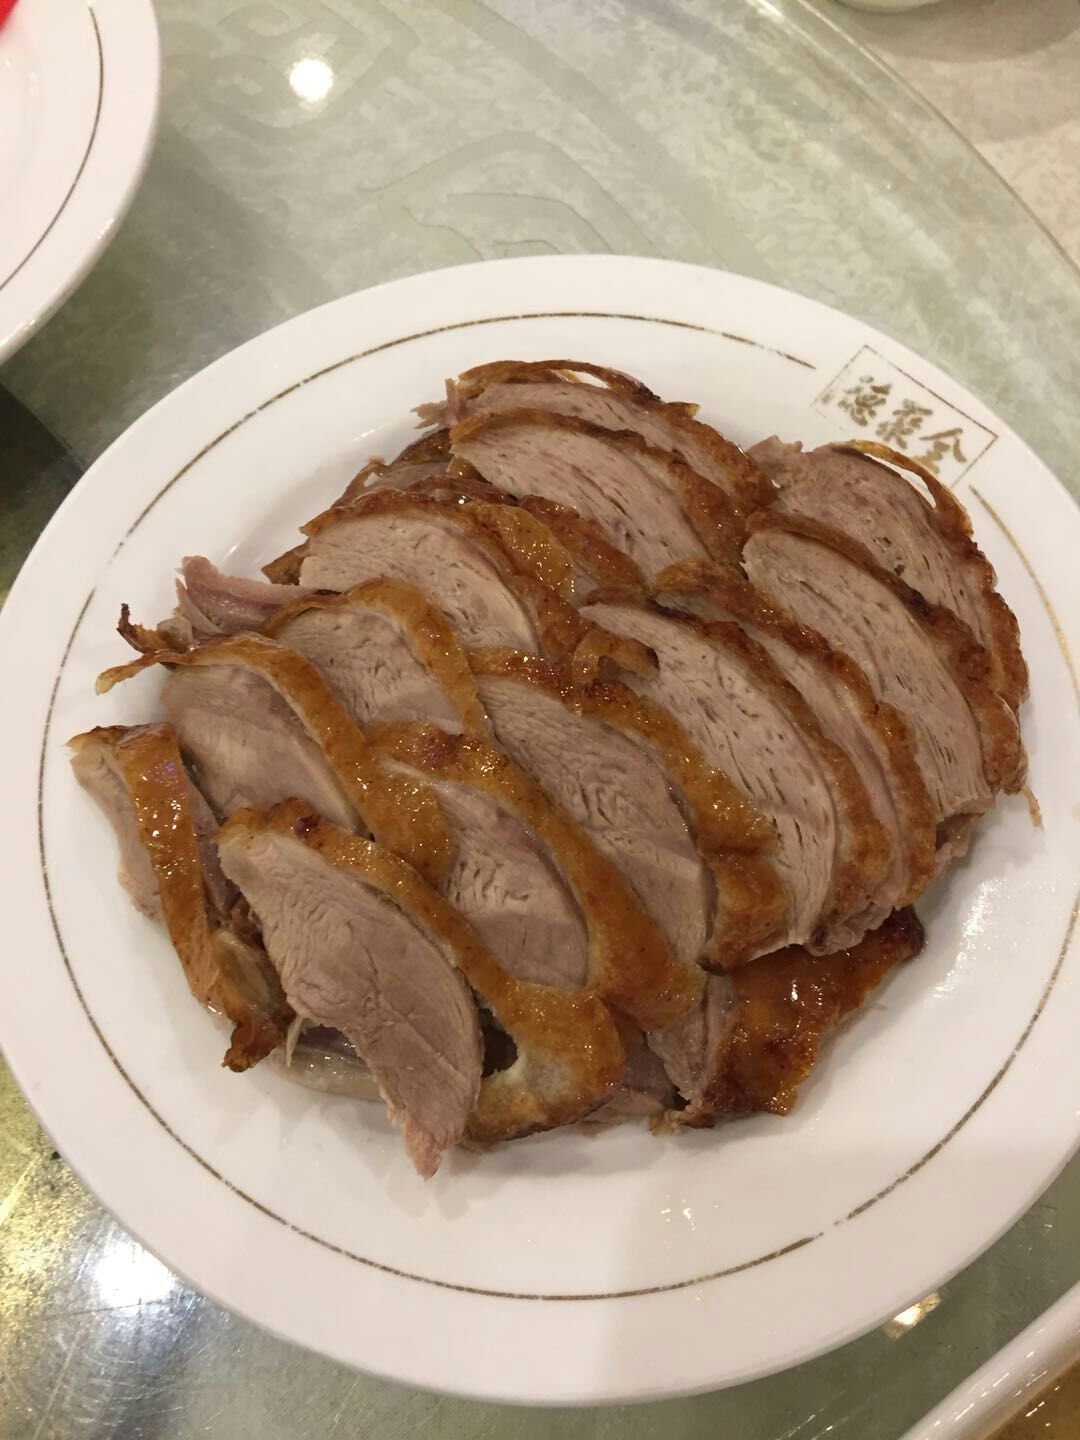 北京全聚德烤鸭照片图片